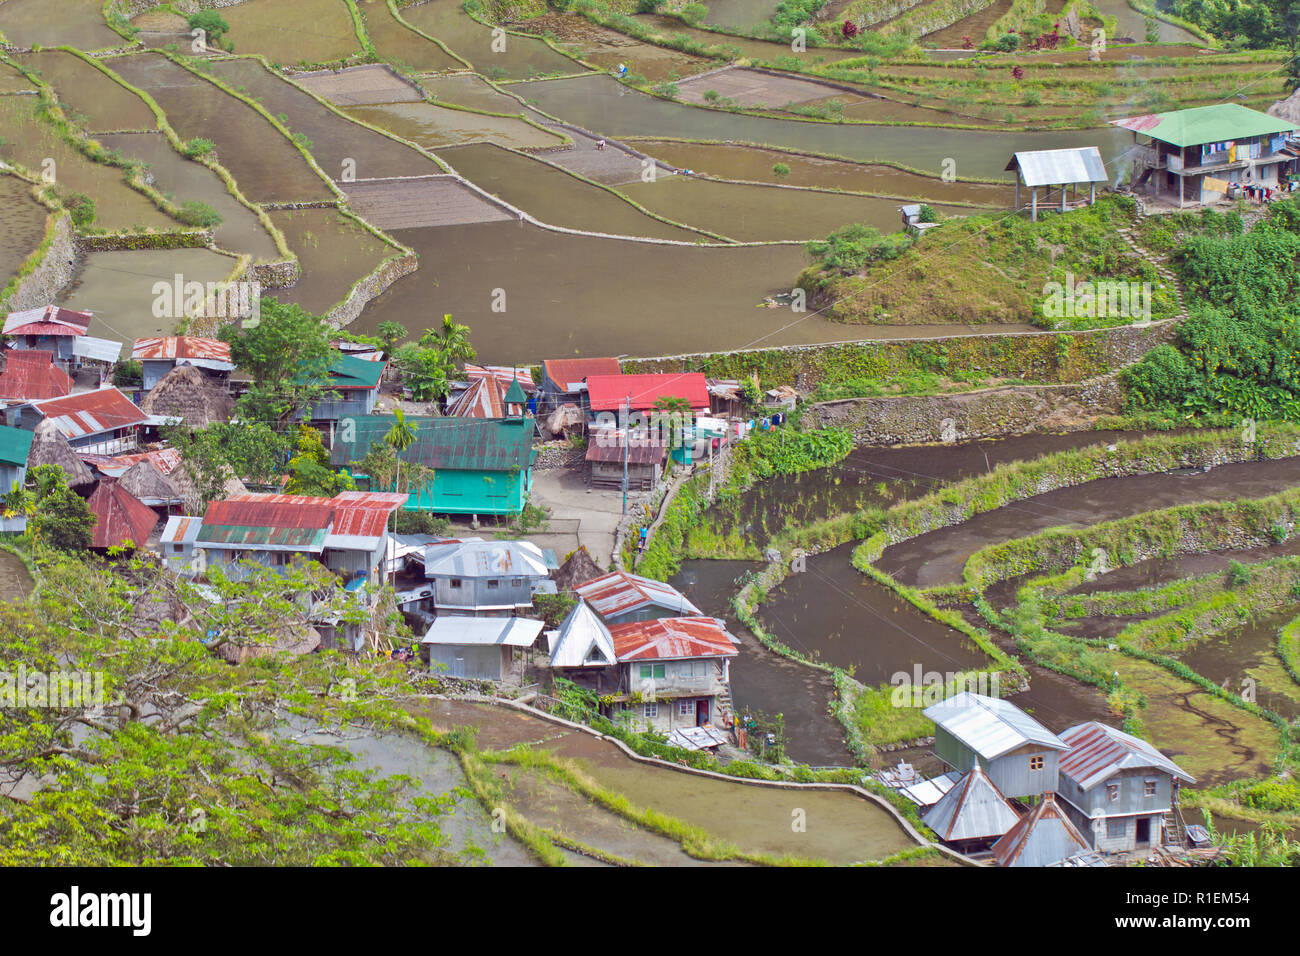 Batad est un village reculé d'environ 1 500 personnes dans la province d'Ifugao. C'est dit d'être à la maison pour le meilleur et le plus préservé des terrasses de riz Banque D'Images